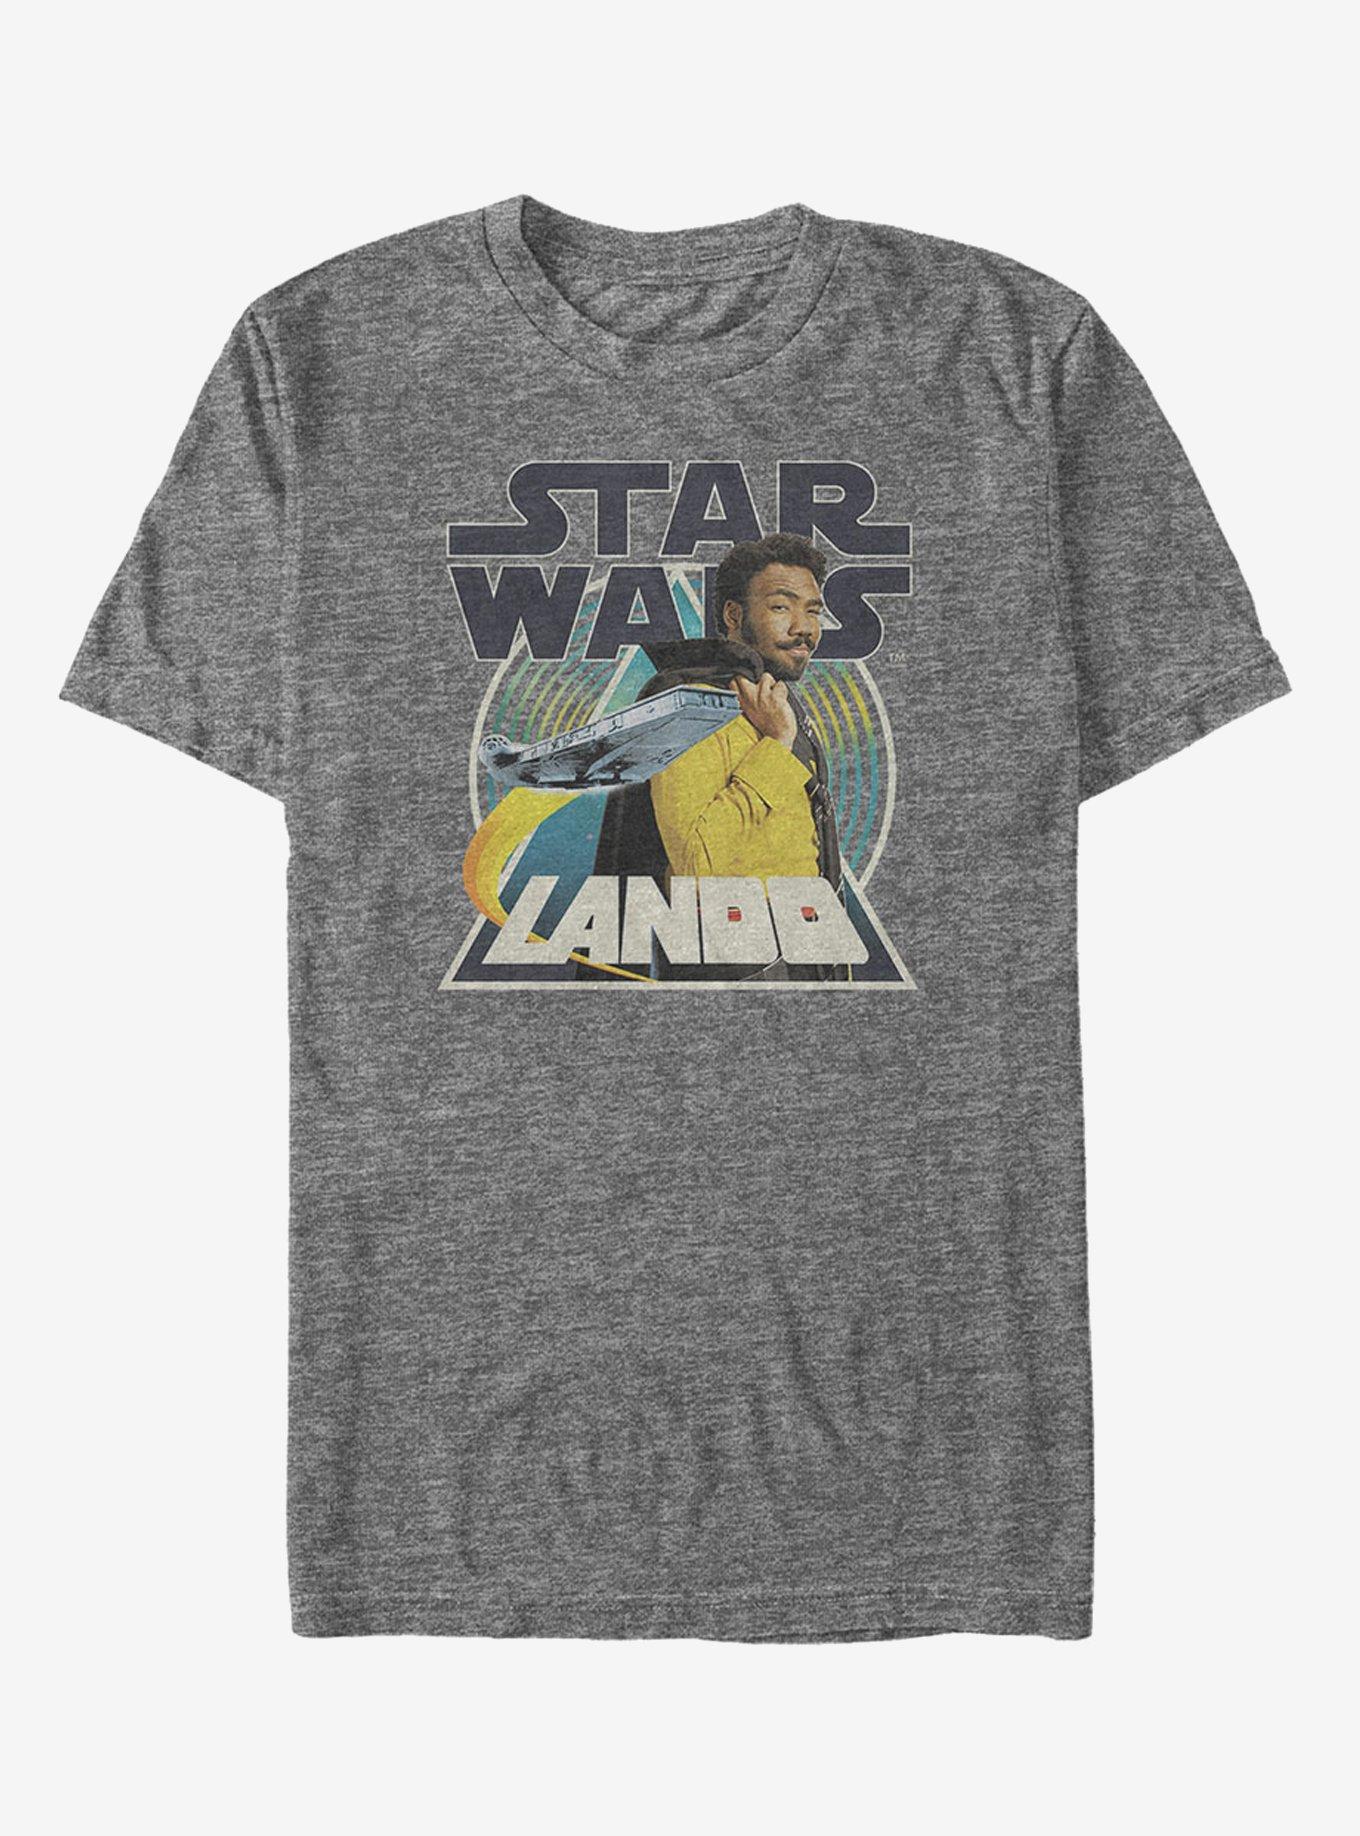 Star Wars Lando Pose T-Shirt